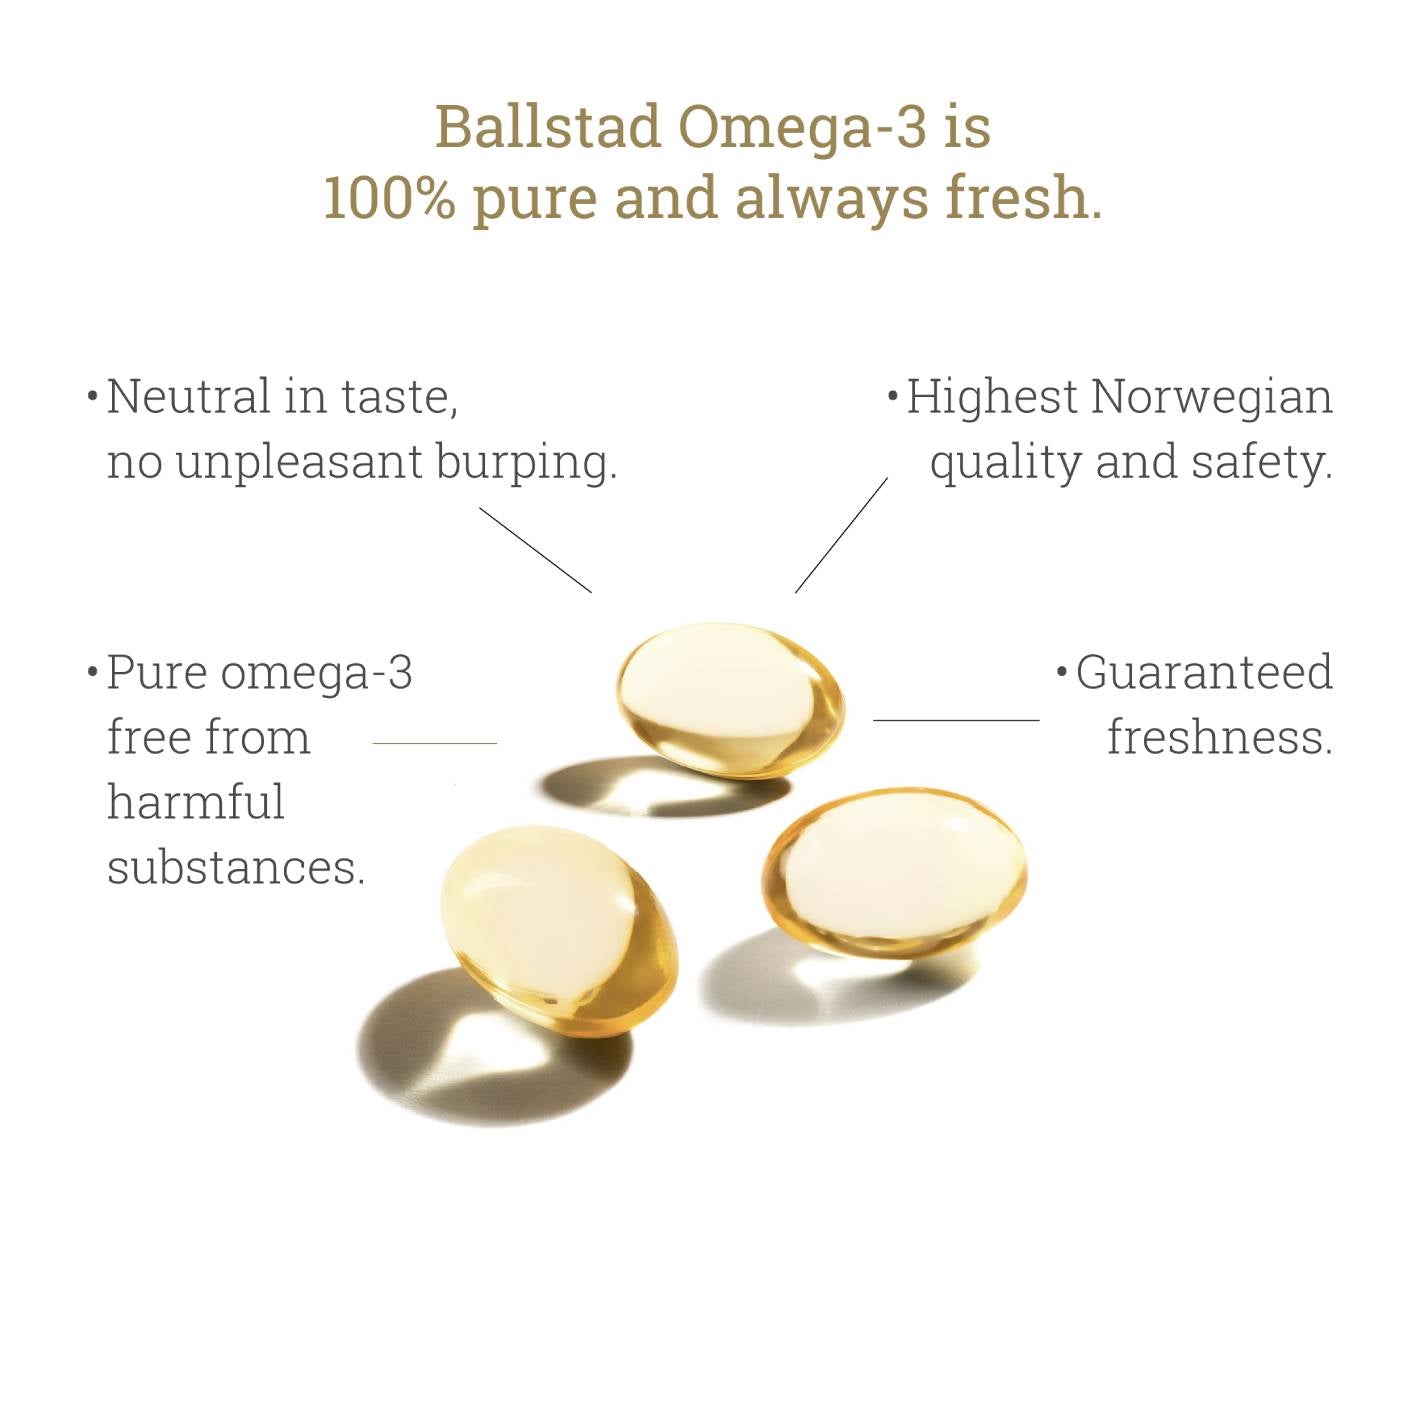 Fresh Norwegian Omega-3 Supplement - 1 Month